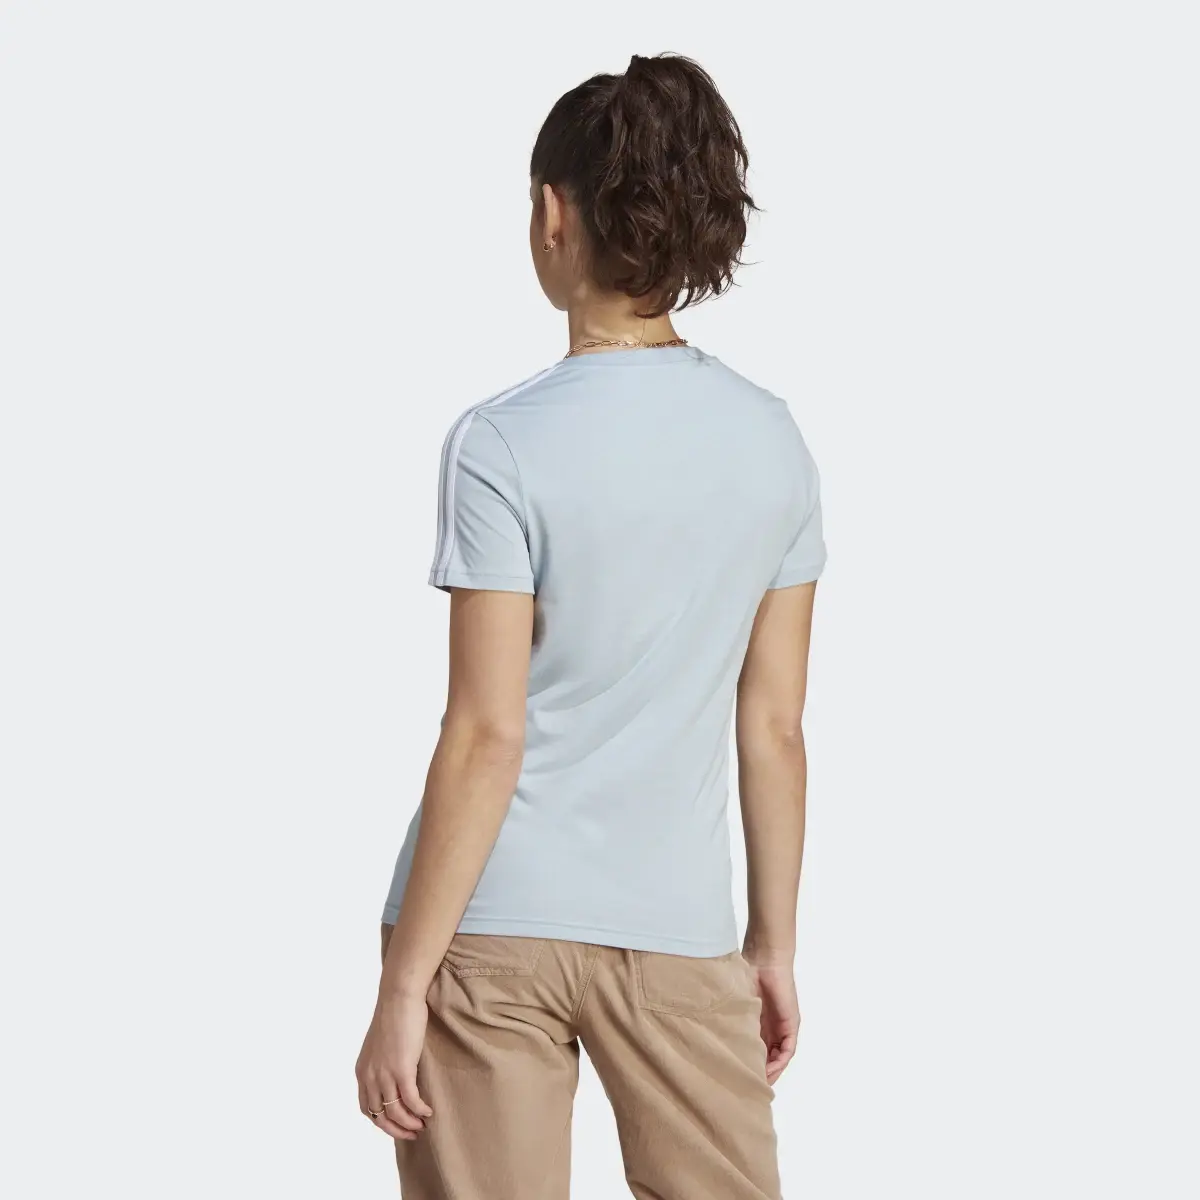 Adidas LOUNGEWEAR Essentials Slim 3-Streifen T-Shirt. 3